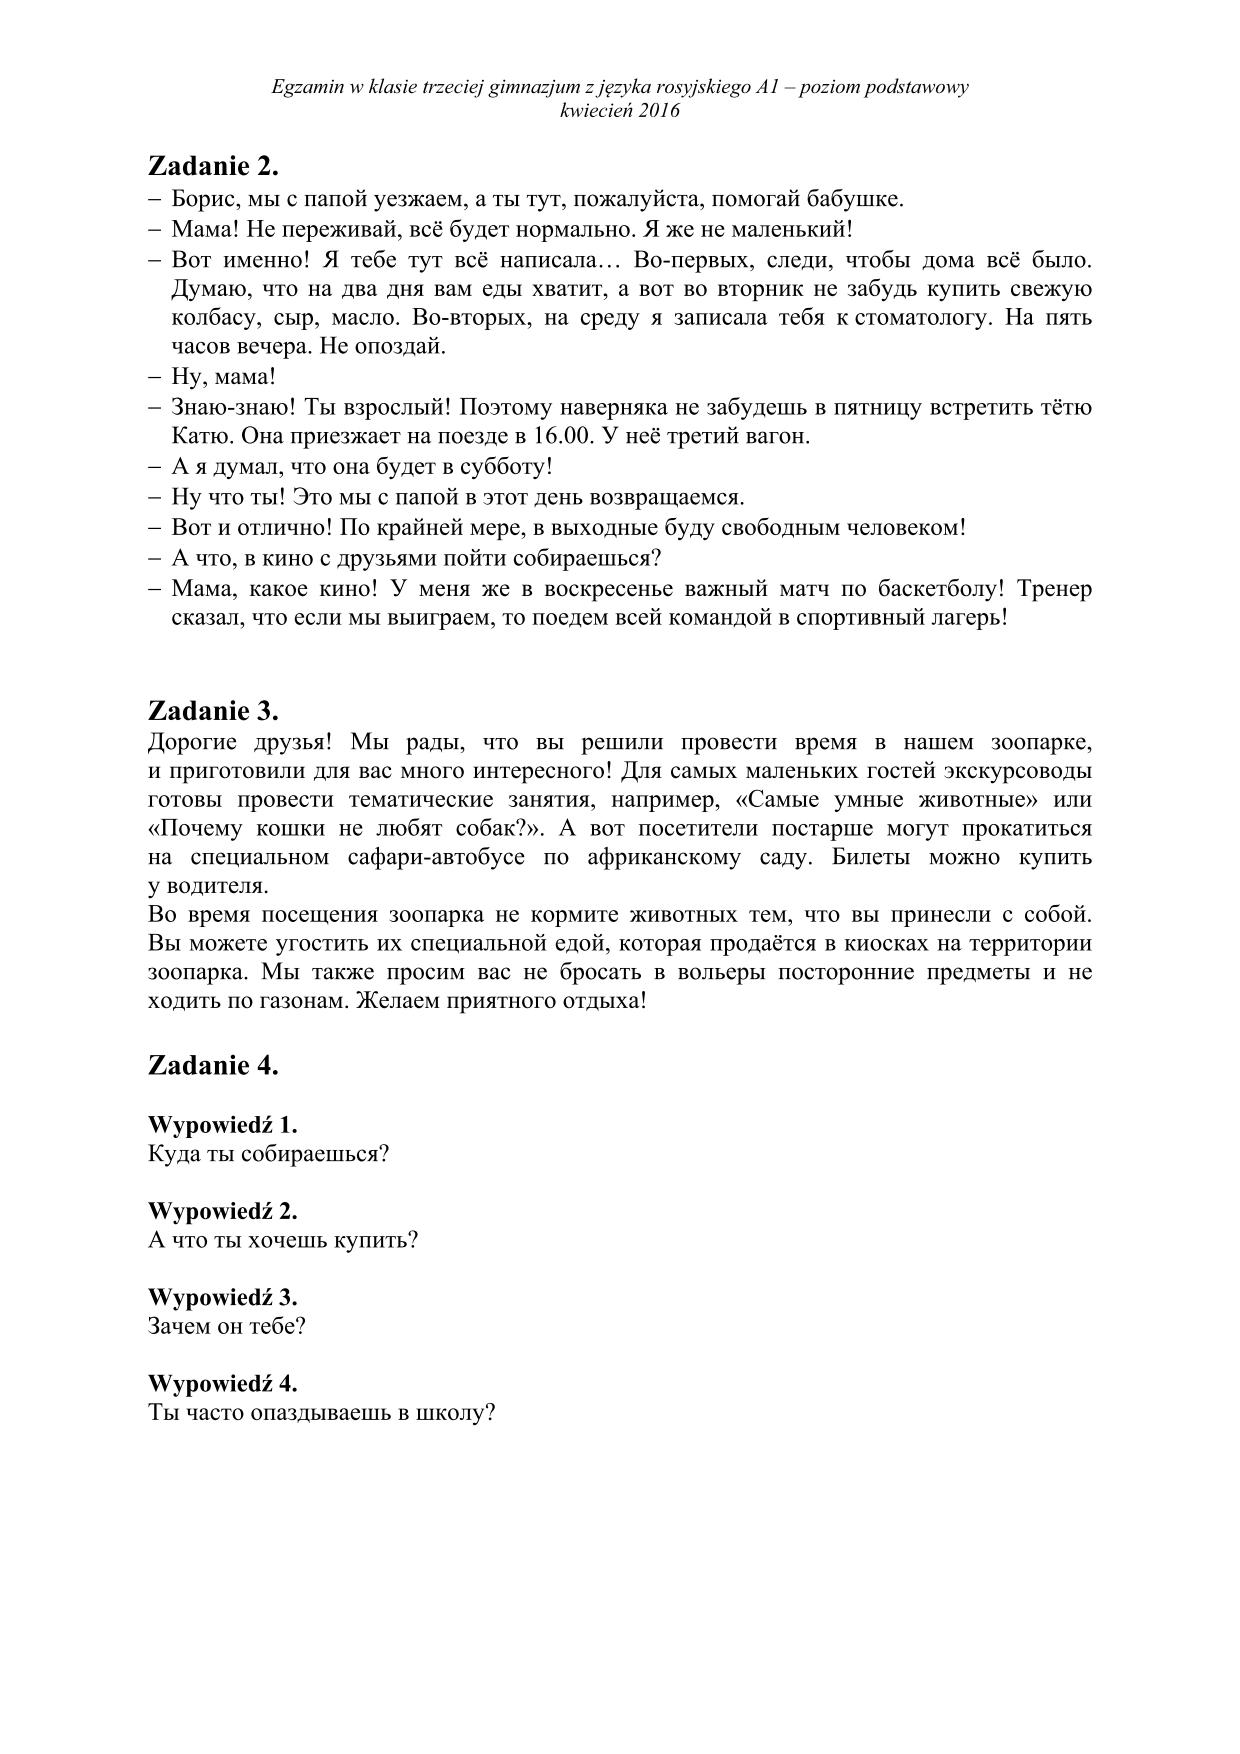 transkrypcja-rosyjski-poziom-podstawowy-egzamin-gimnazjalny-2016 - 2